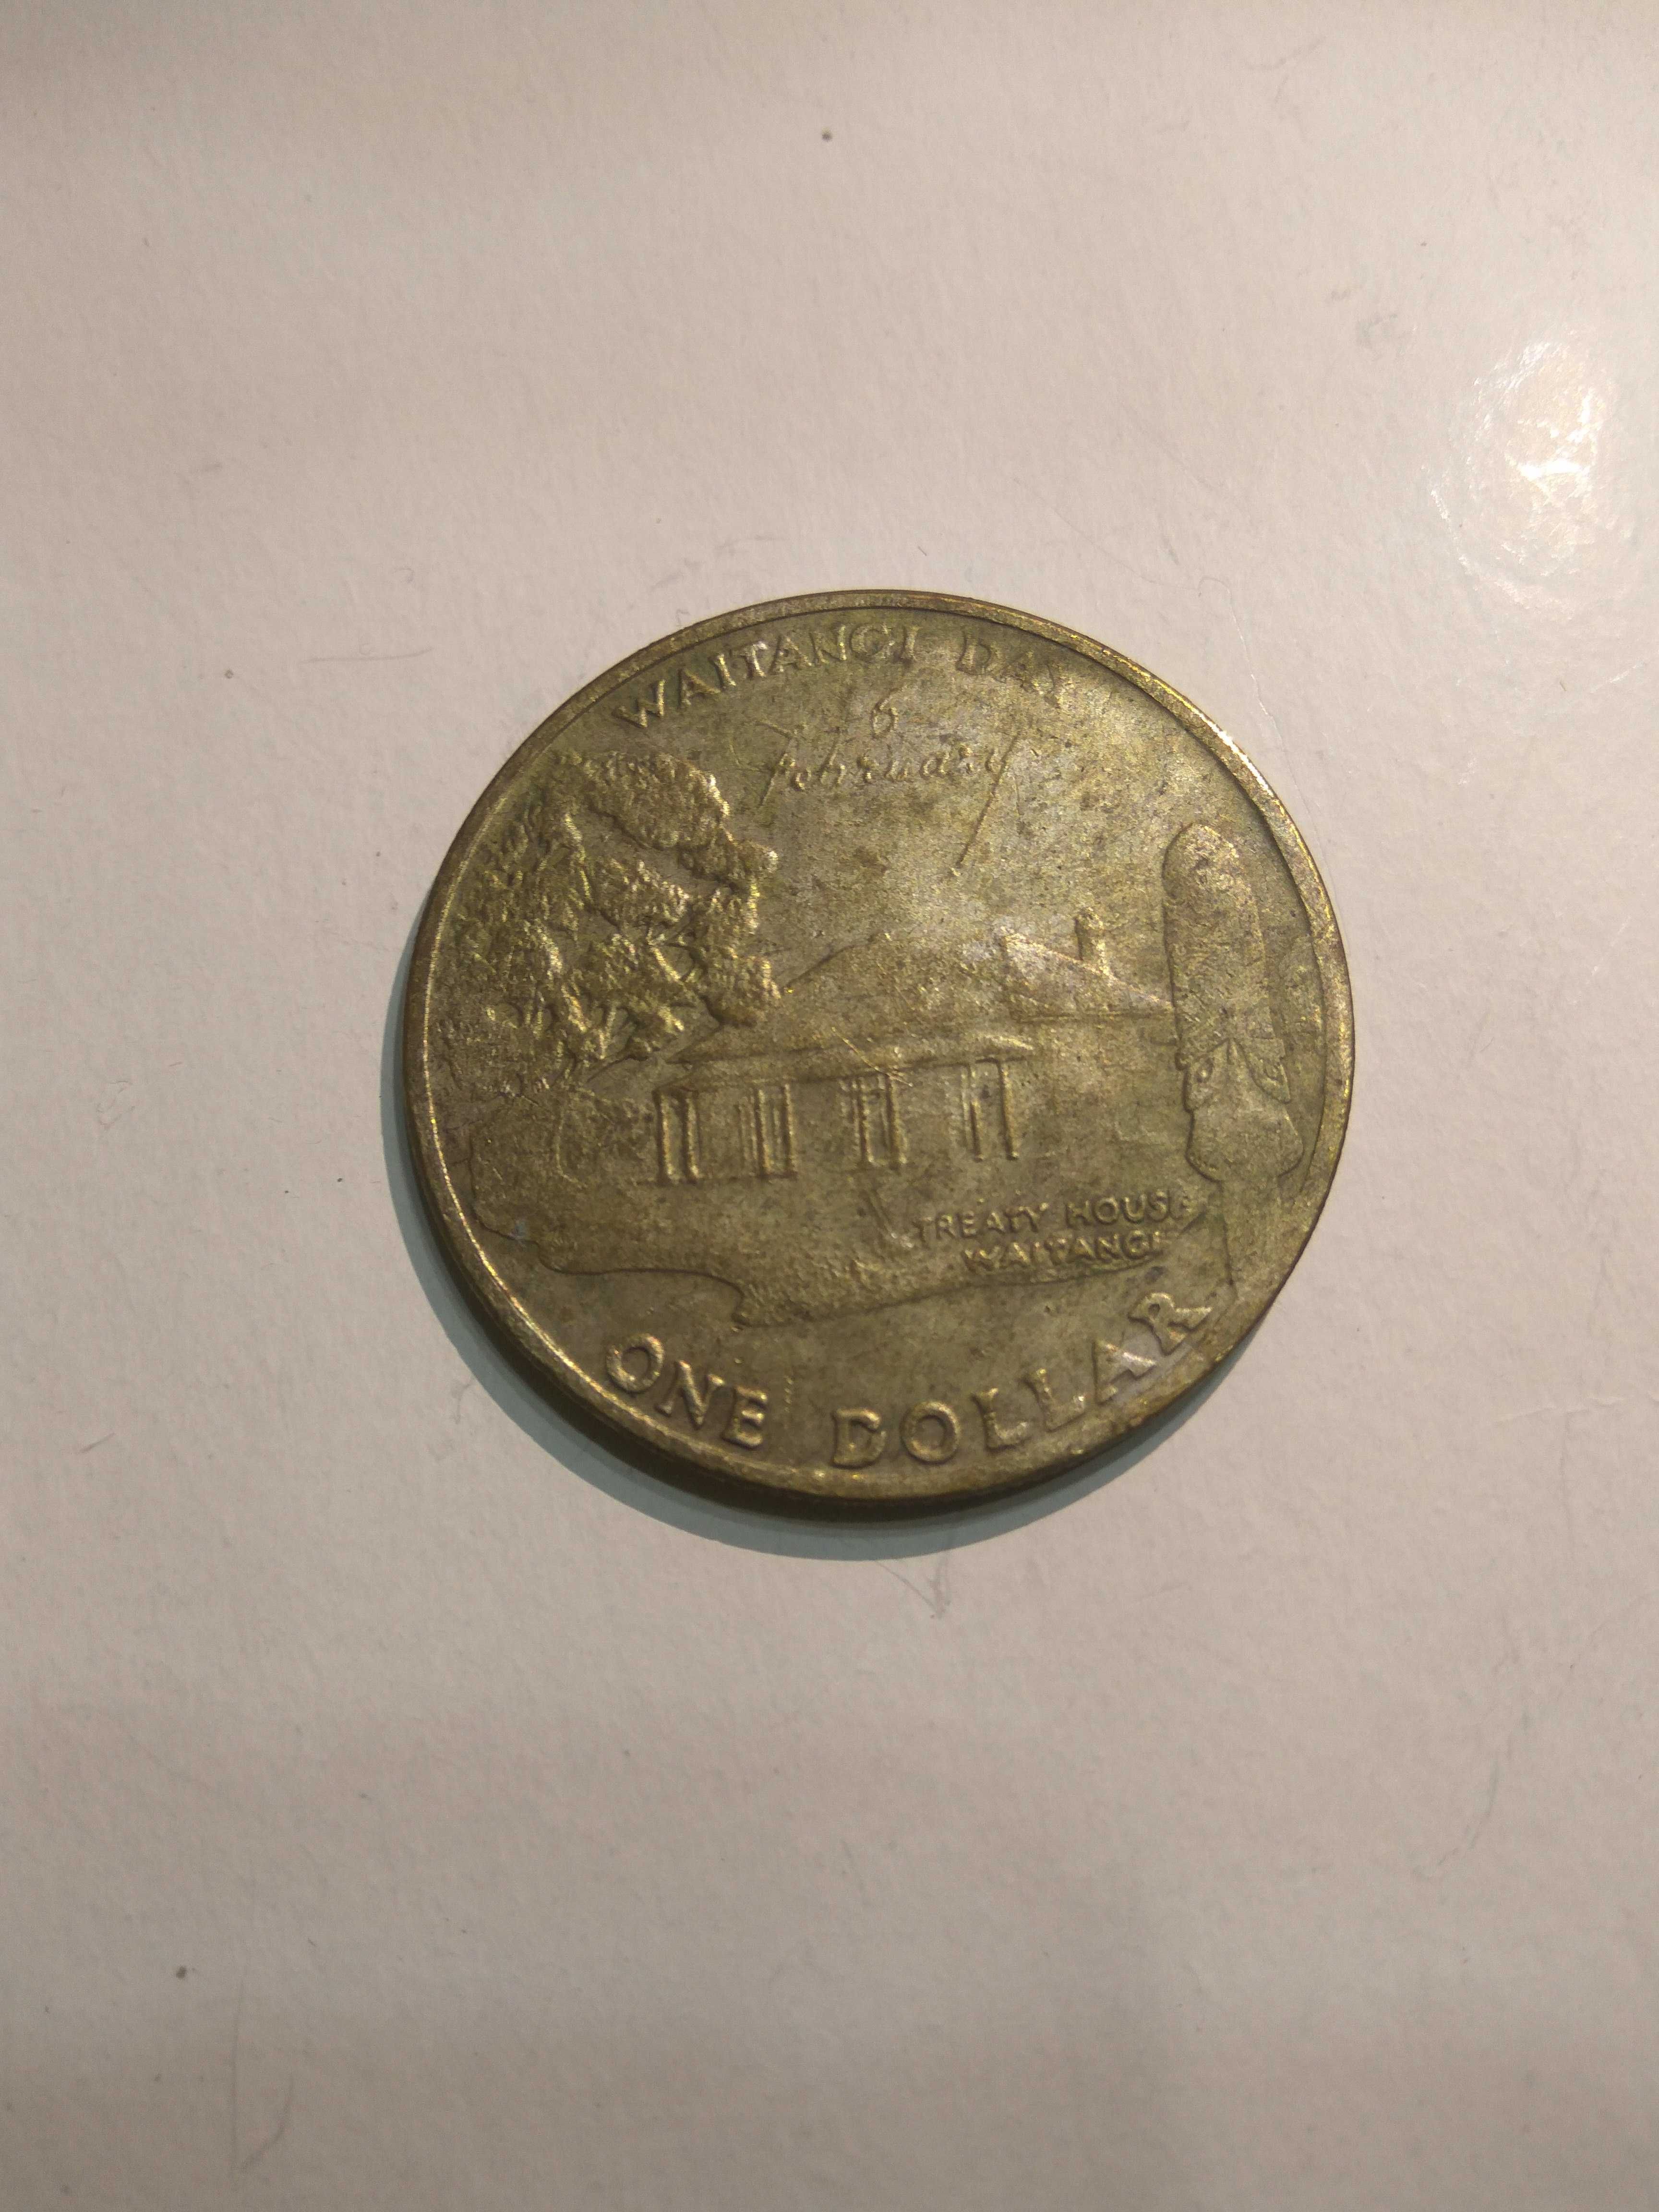 New Zealand Dollar, 1977, Waitangi House